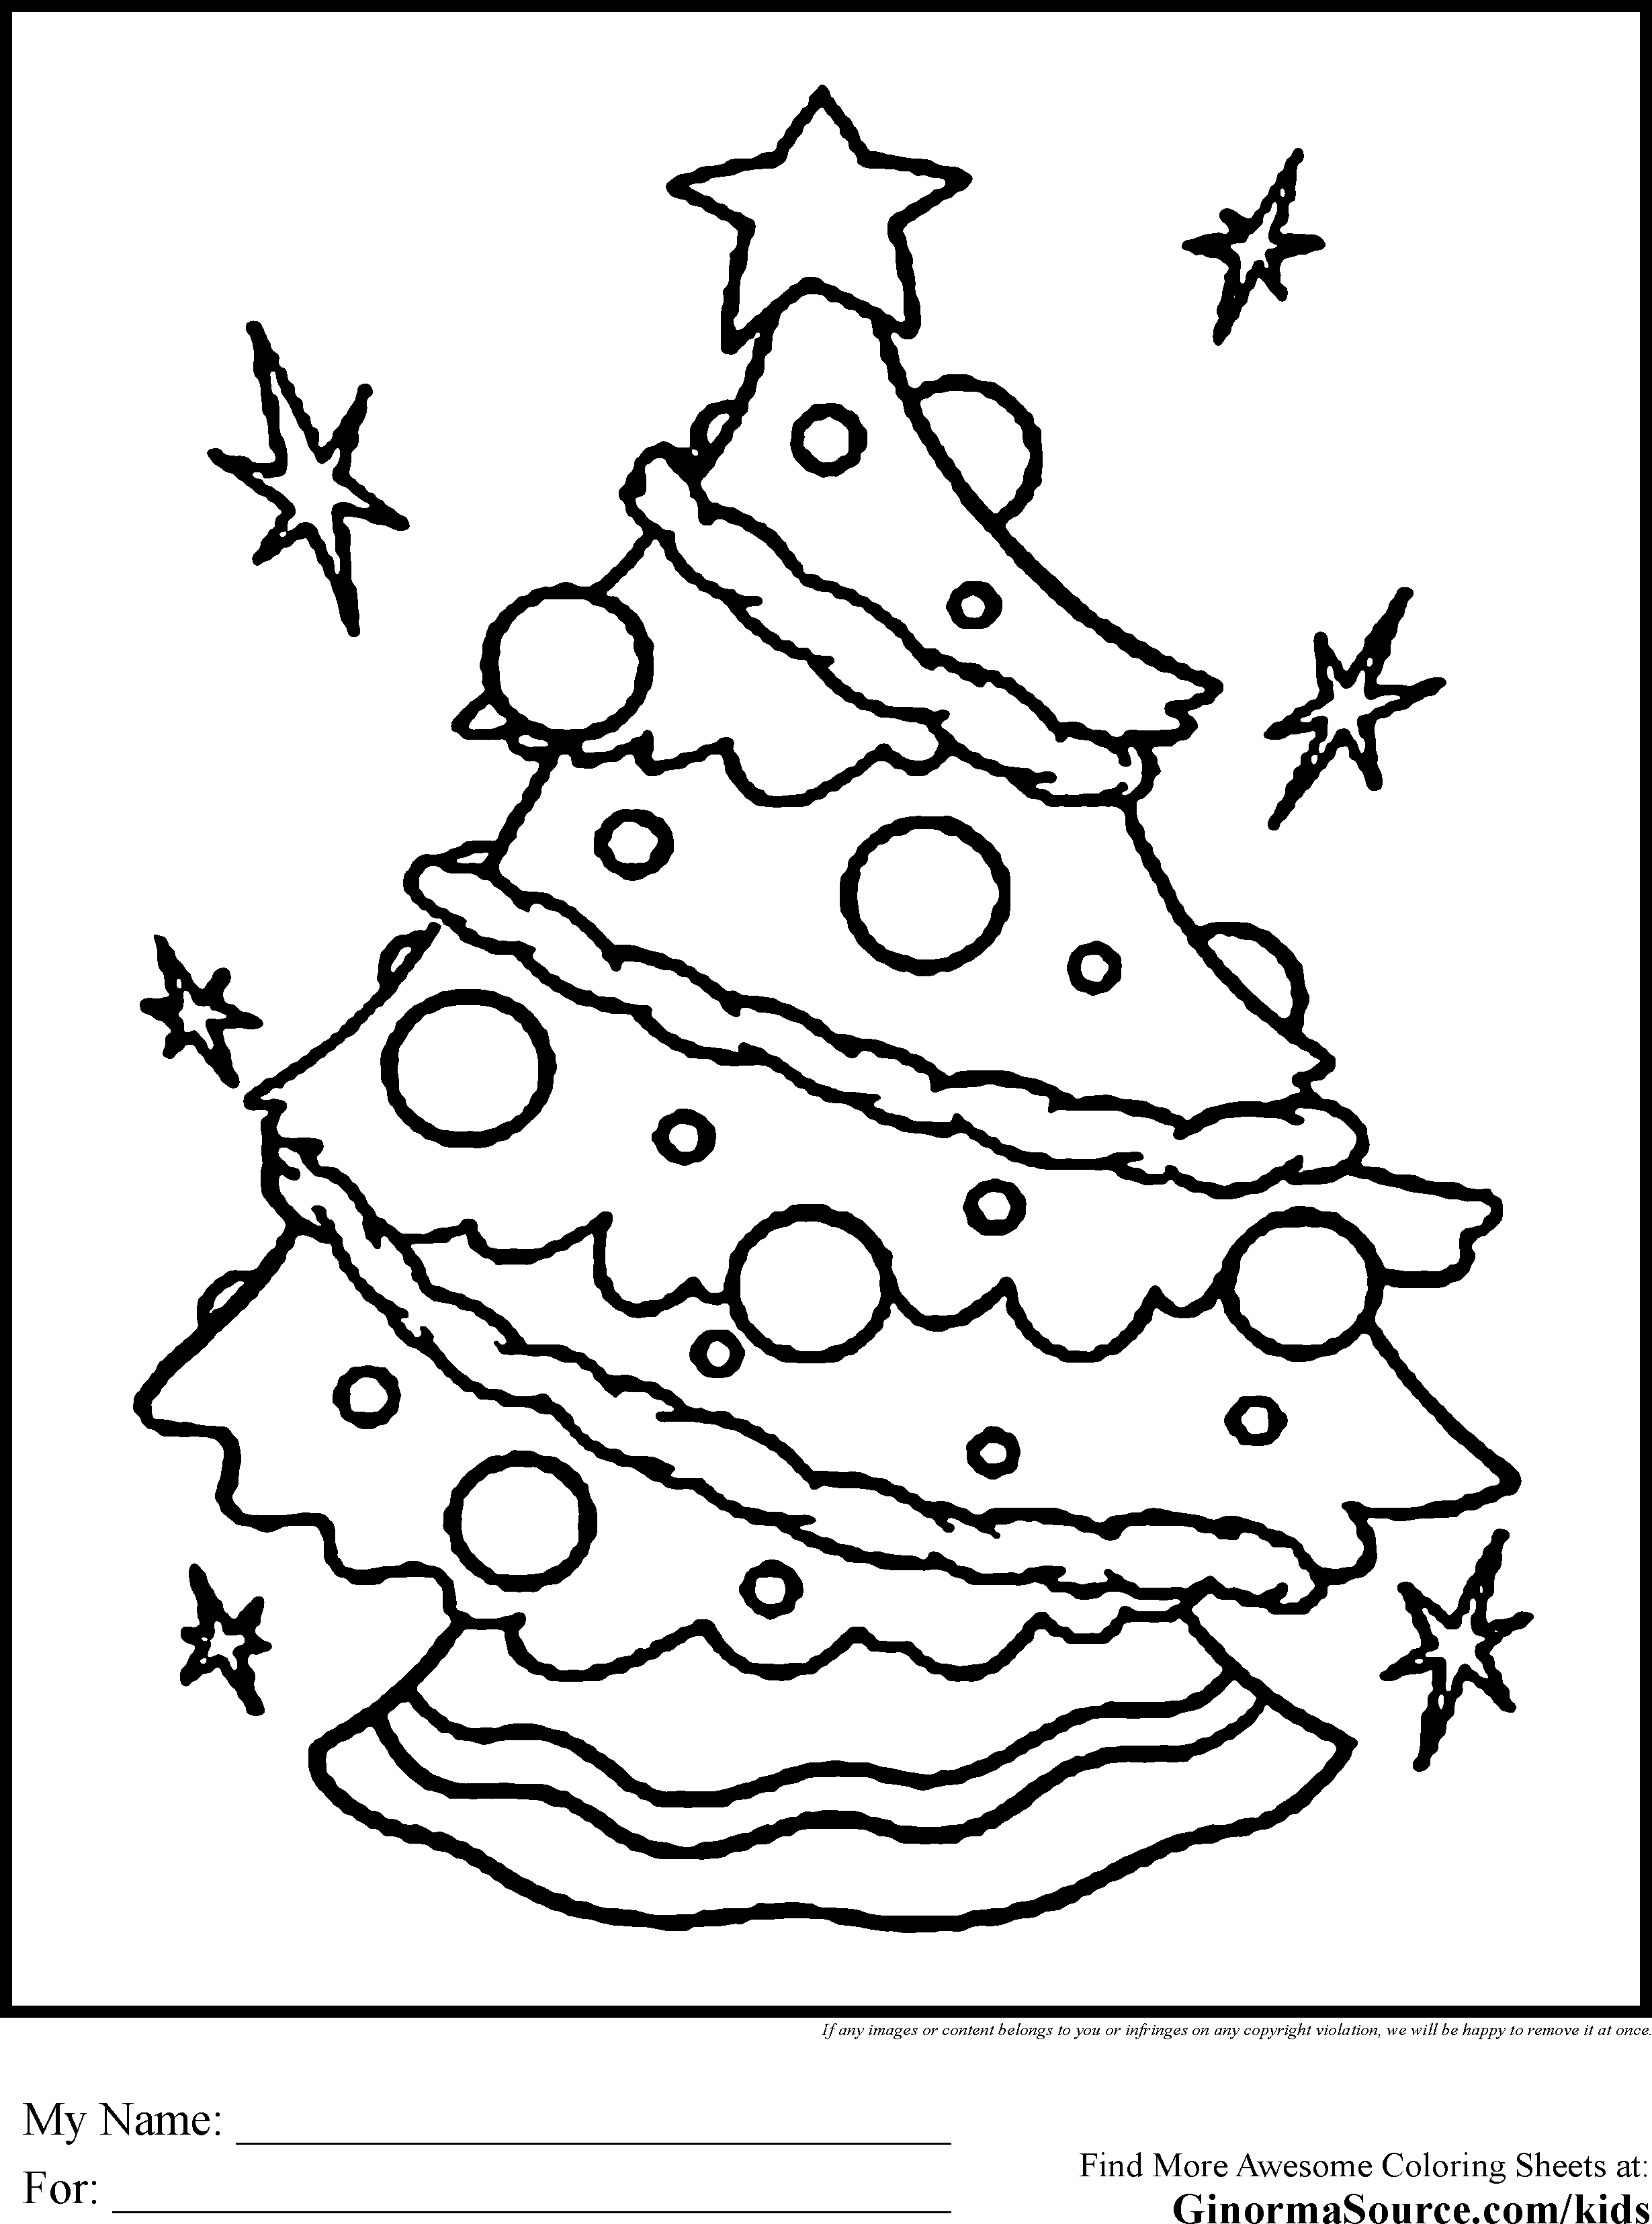 Decorations christmas | CHRISTMAS TREE | SANTA CLAUS | HAPPY NEW YEAR | NOÃ‹L | Ø¹ÙŠØ¯ Ù…ÙŠÙ„Ø§Ø¯ | è–èª•ç¯€ | ã‚¯ãƒªã‚¹ãƒžã‚¹ | í¬ë¦¬ìŠ¤ë§ˆìŠ¤ | #